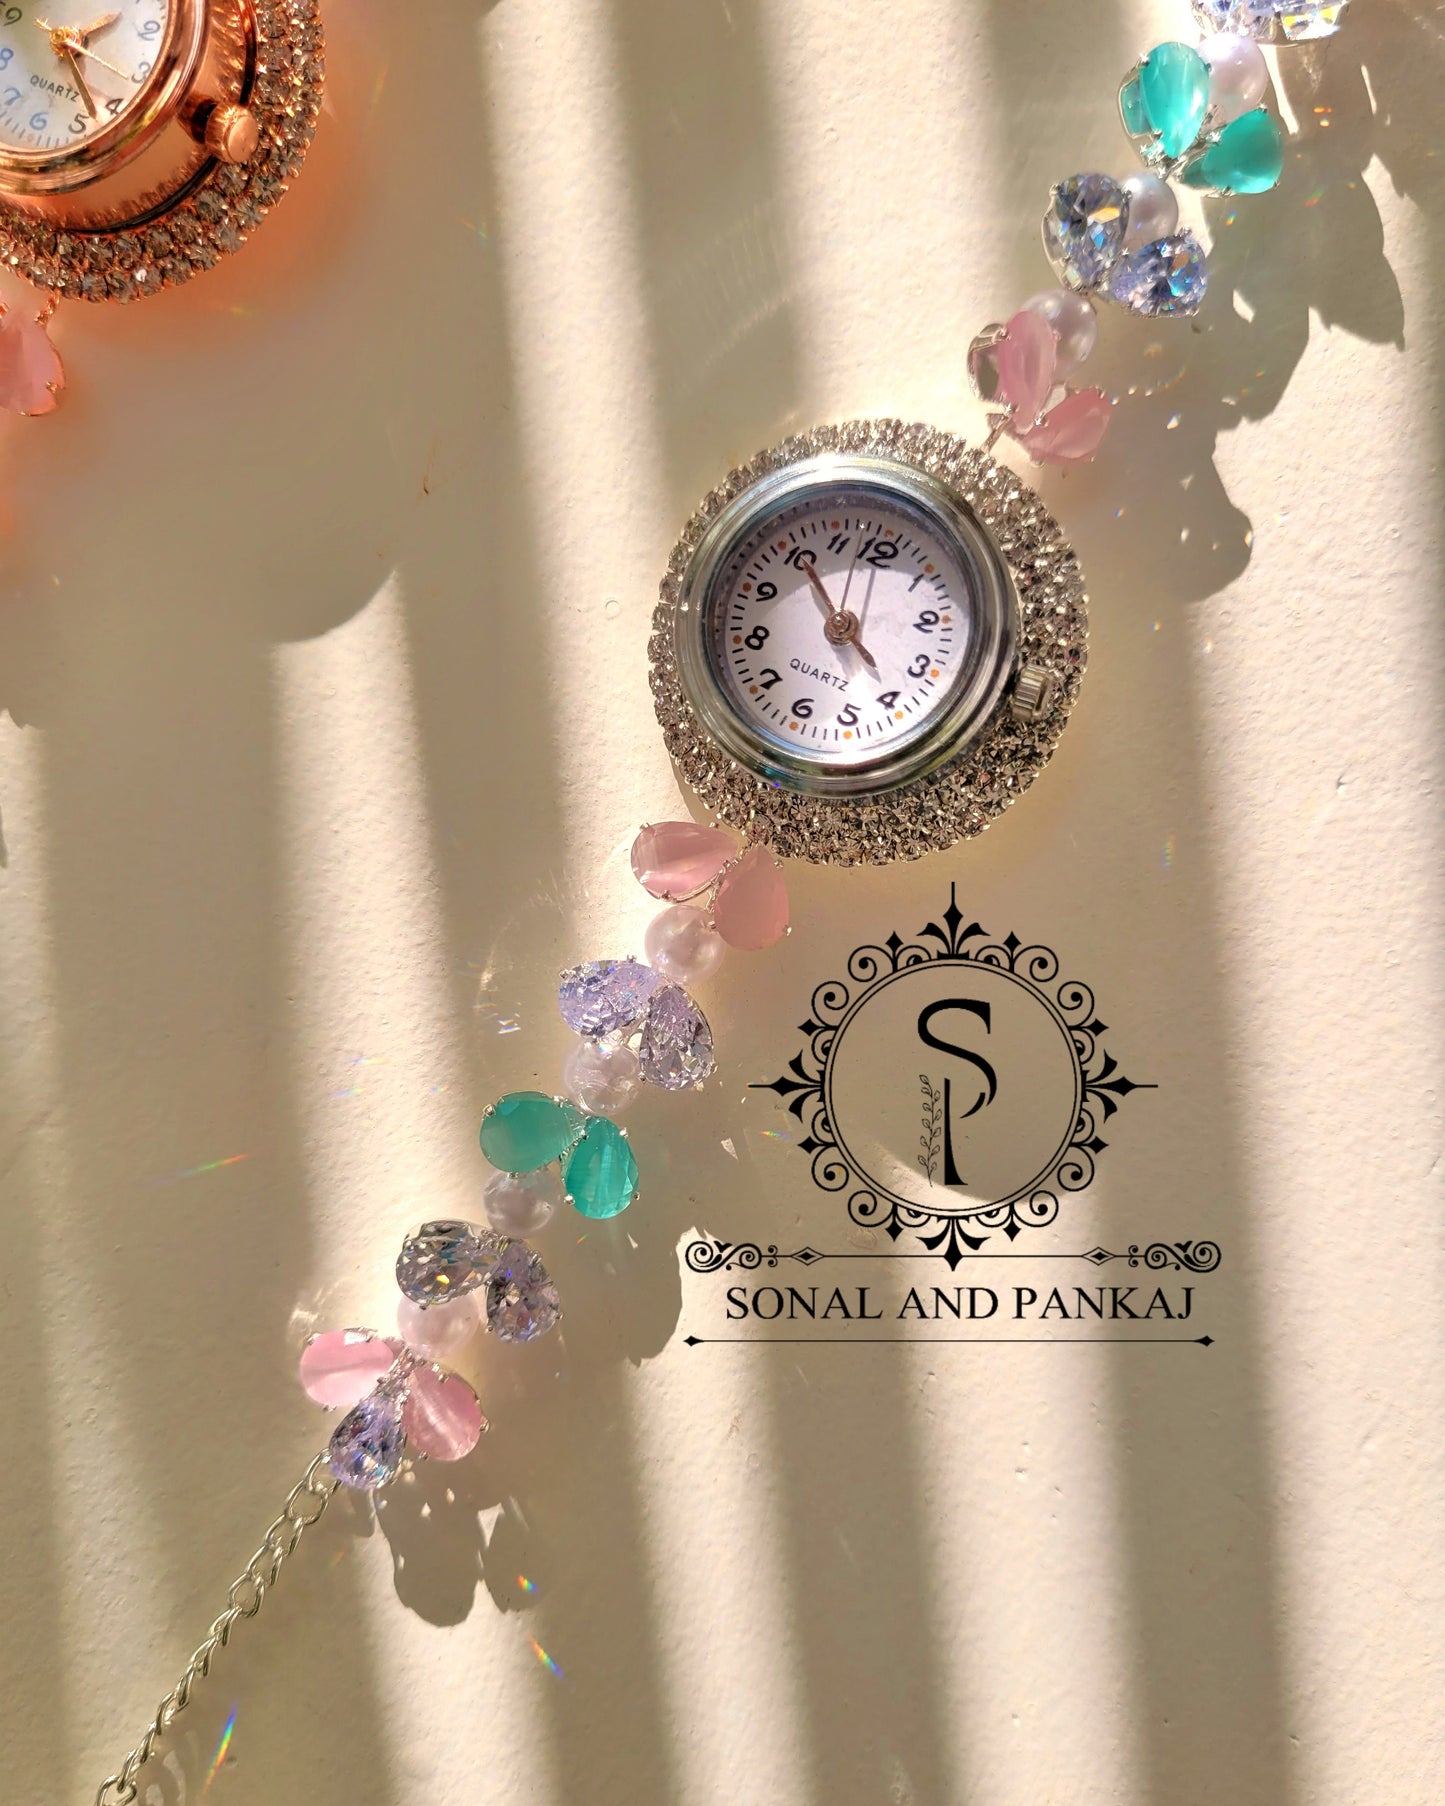 Gardenia Watch Bracelet (Free Size) - RG01261